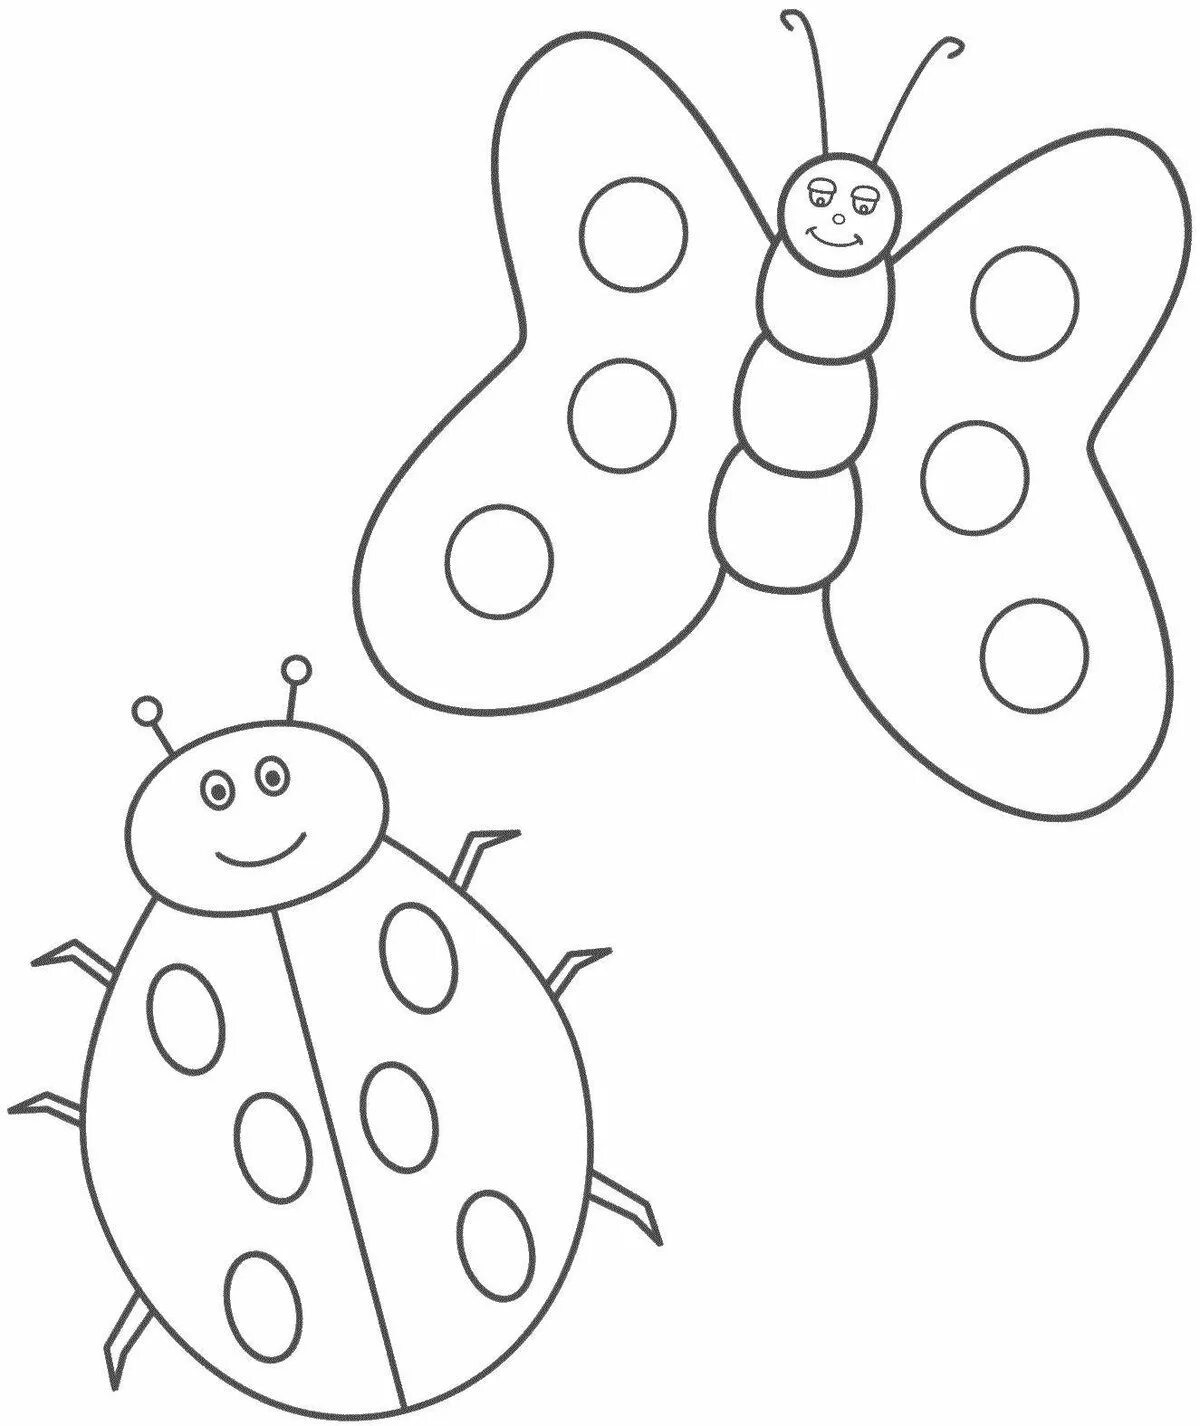 Раскраски для детей 3 лет насекомые. Насекомые. Раскраска. Бабочка раскраска для детей. Раскраска насекомые для малышей. Трафарет насекомые для детей.